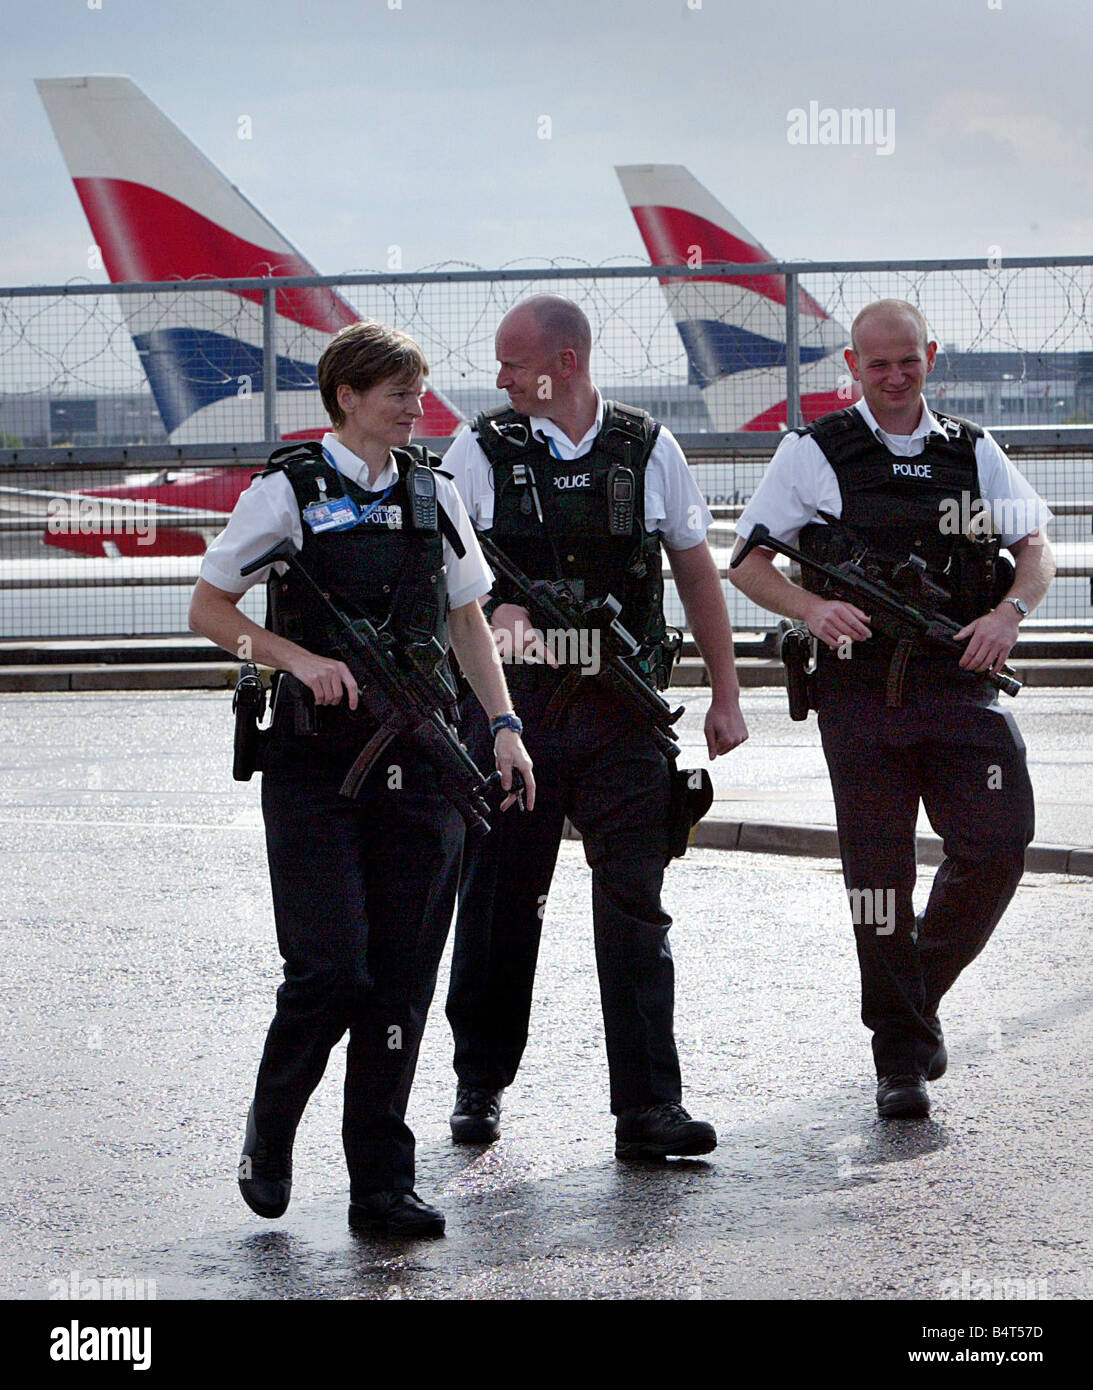 Bewaffnete Polizisten kommt am Terminal 4 am Flughafen London Heathrow nach anti-Terror-Einheiten der Metropolitian Polizei und MI5 vereitelt ein Terroranschlags auf mehrere Flugzeuge im Flug zwischen den Vereinigten Staaten und das Vereinigte Königreich mit Sprengstoff in die Luft sprengen in der hand Gepäck August 2006 geschmuggelt Stockfoto